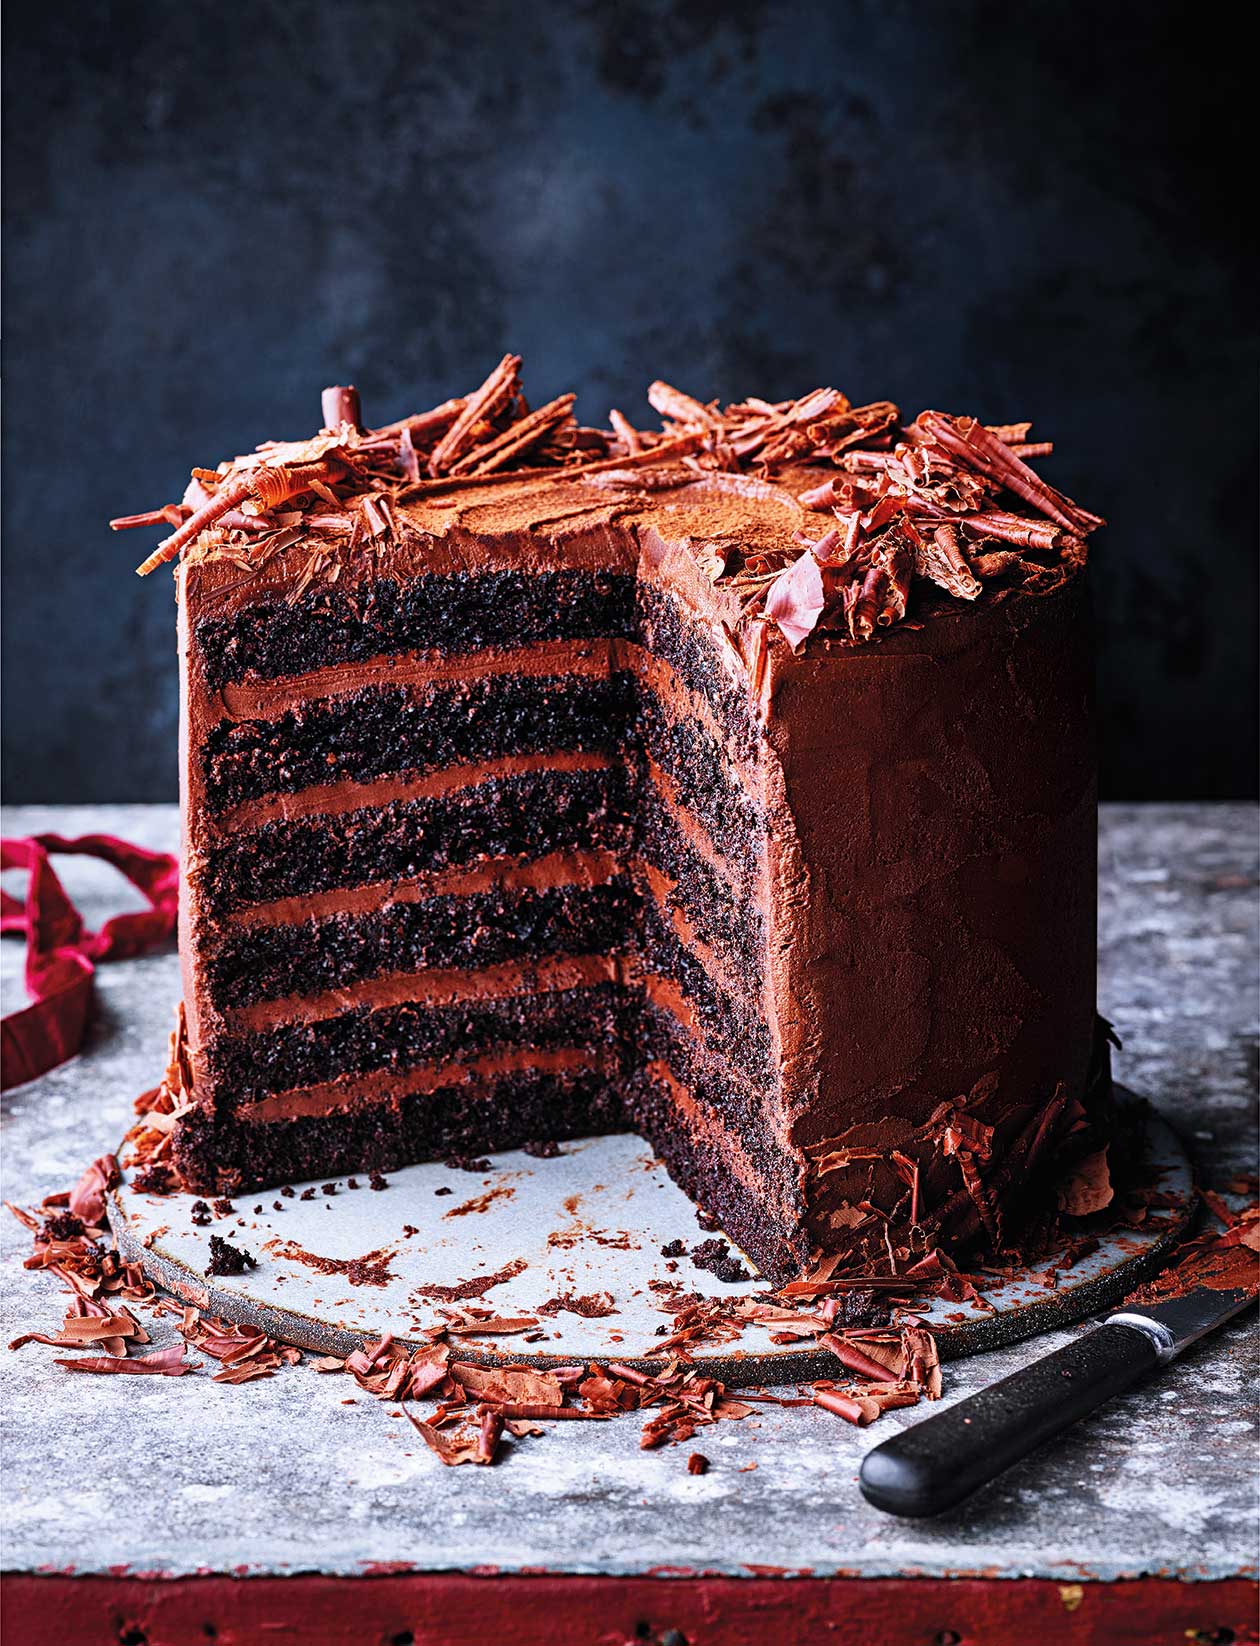 Chocolate fudge cake recipe